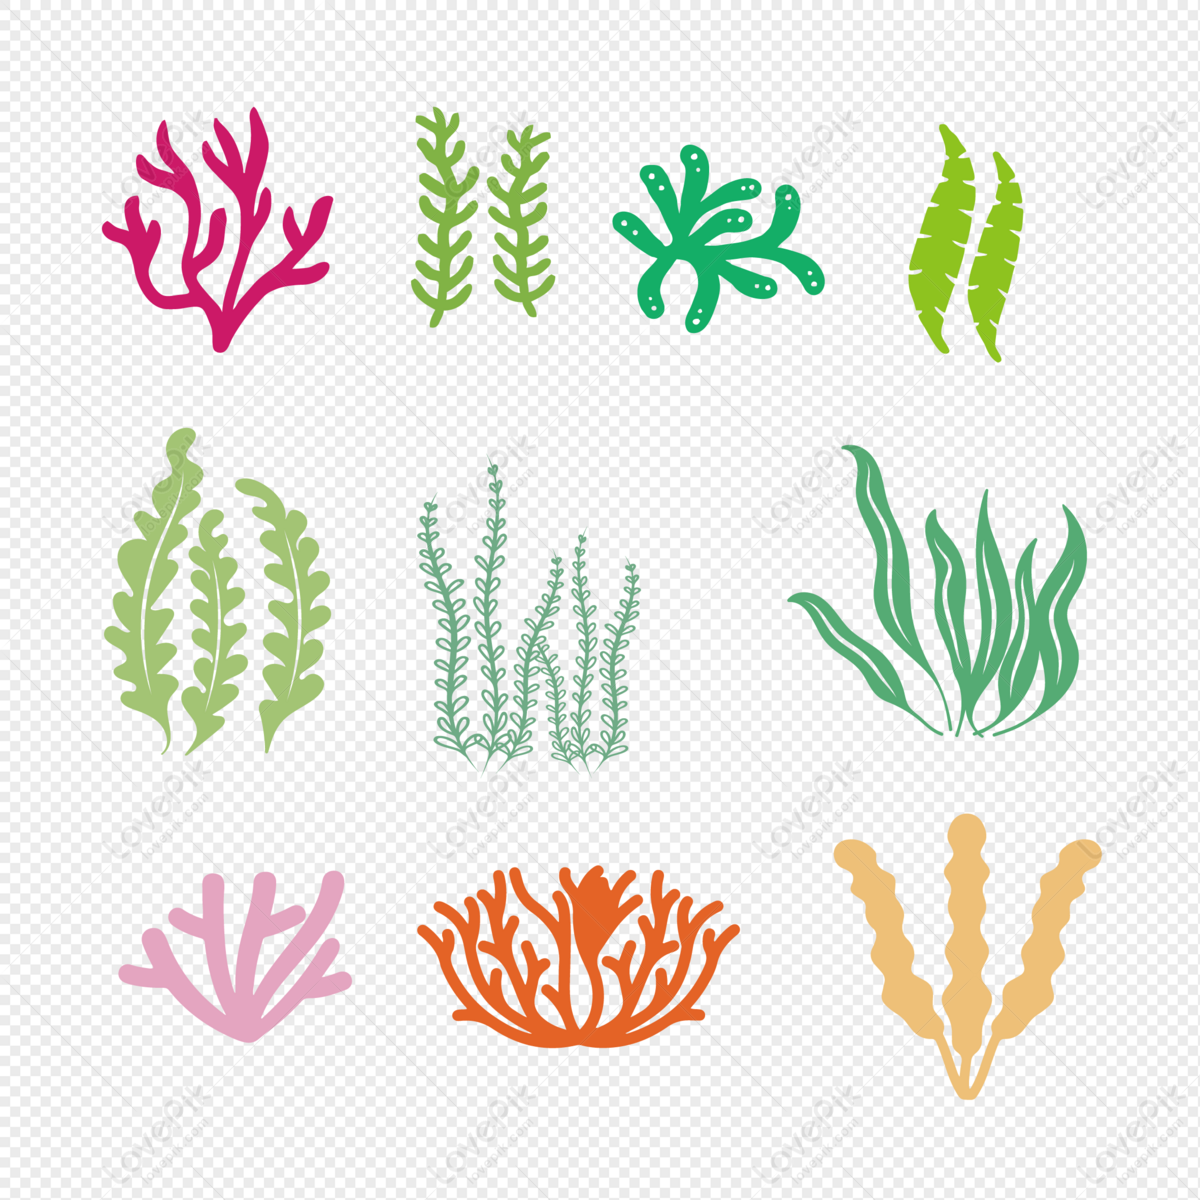 Tảo san hô: Tảo san hô là loại tảo độc đáo, có màu sắc rực rỡ và rất đa dạng. Khi ngắm nhìn hình ảnh của chúng, bạn sẽ nhận thấy sự đa dạng của thế giới dưới đáy biển. Hãy tận hưởng những đường nét và màu sắc tuyệt vời của tảo san hô trong bức tranh, để có một nhìn nhận khác về sự đa dạng của thiên nhiên.